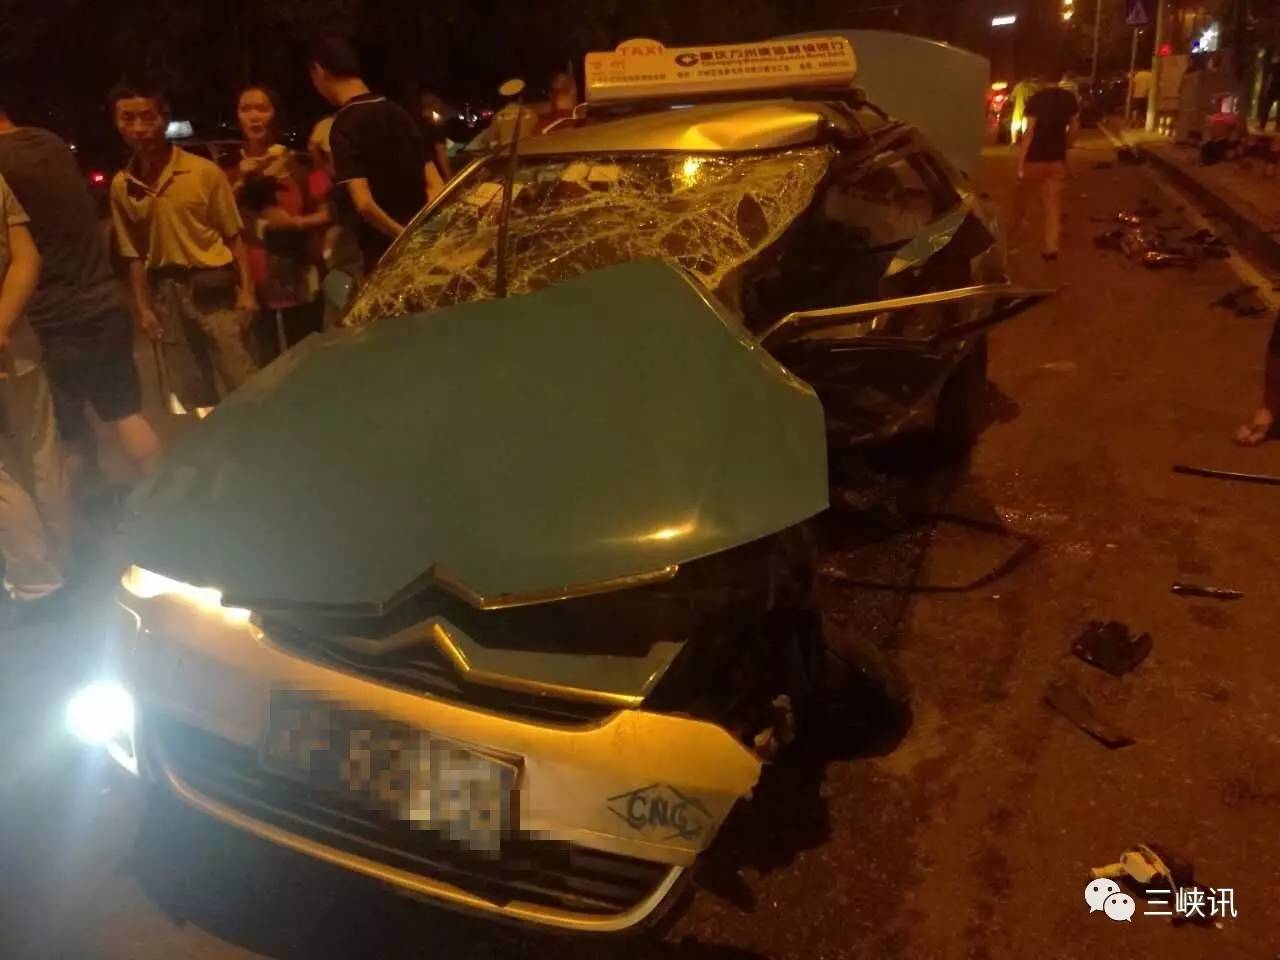 北滨路发生严重车祸,出租车几乎被拦腰撞断!驾驶员生命垂危!